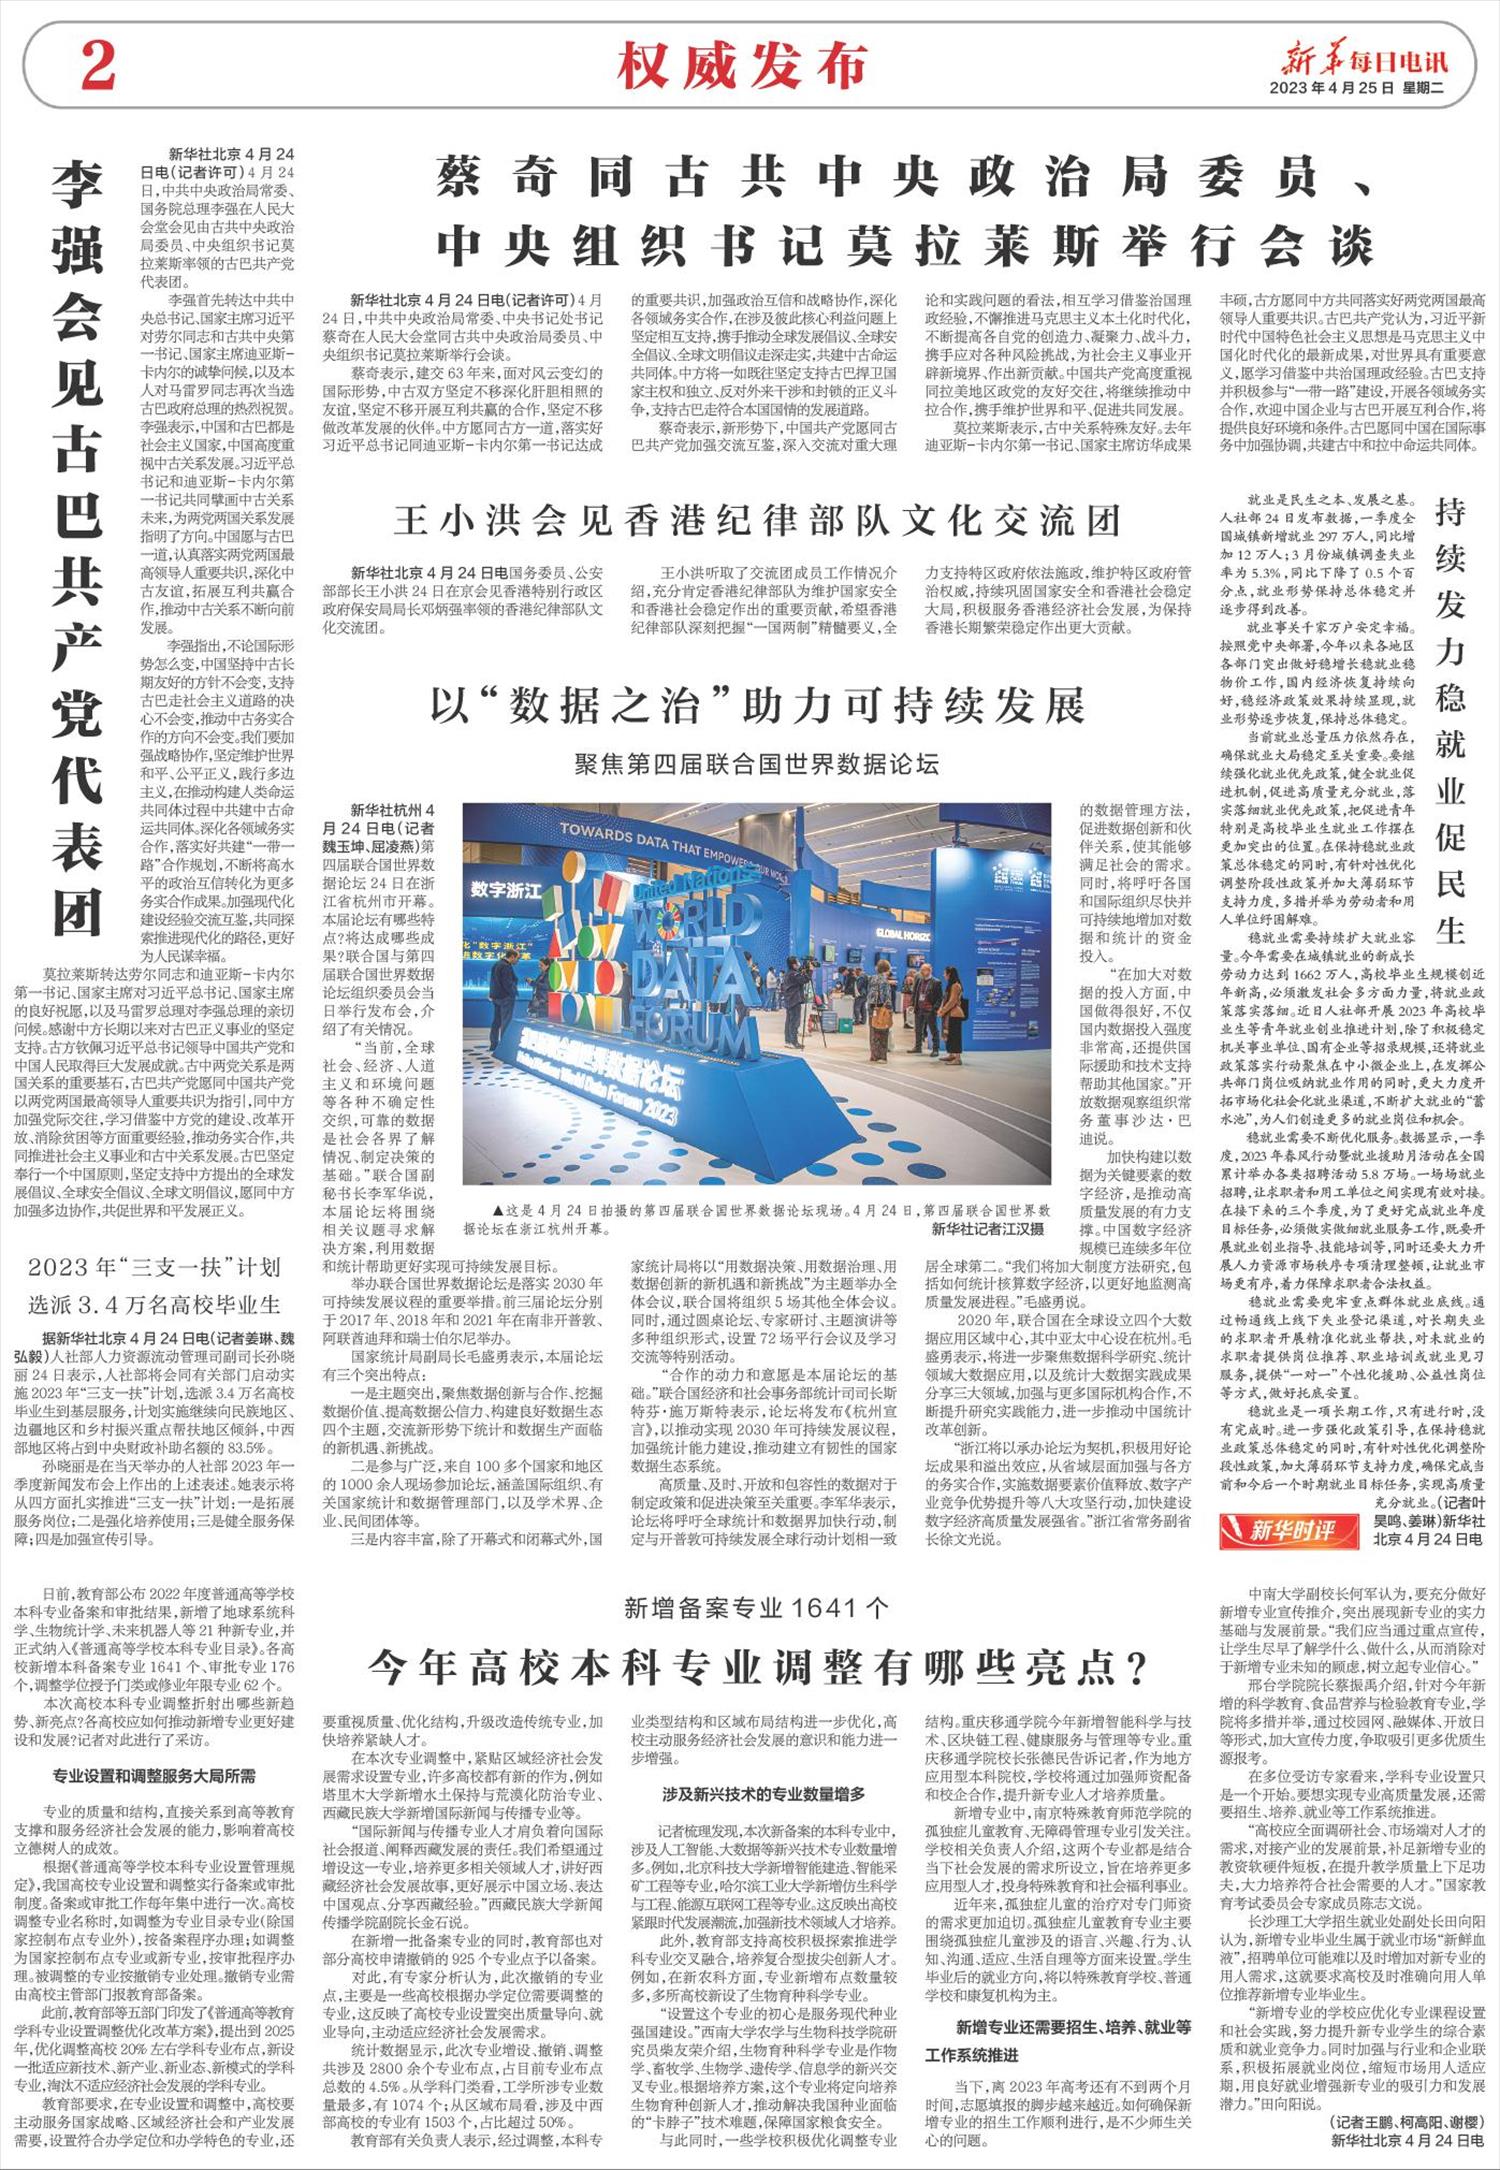 新华每日电讯-微报纸-2023年04月25日